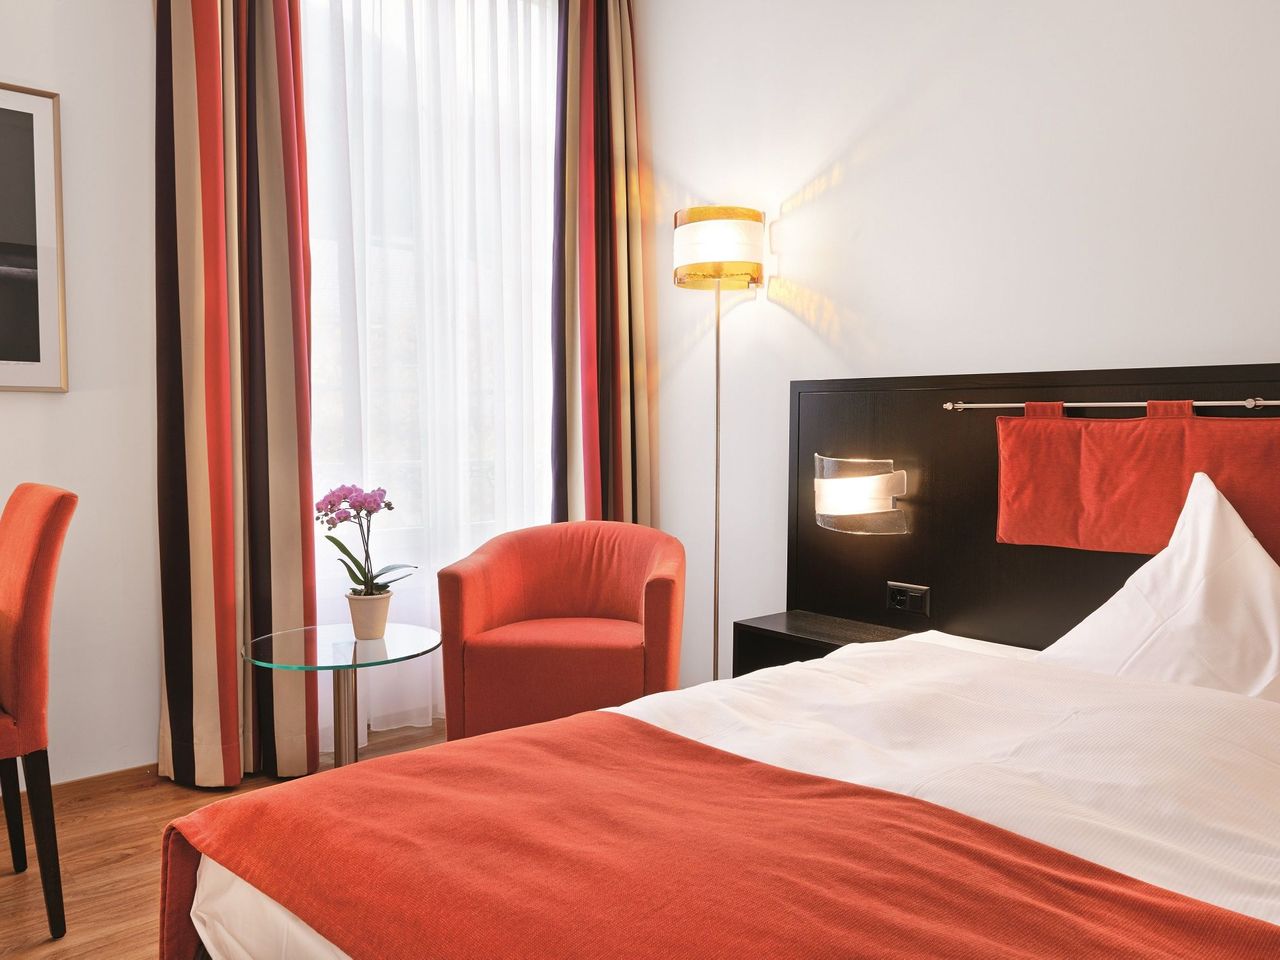 8 Tage Schweiz entdecken im Sorell Hotel Tamina